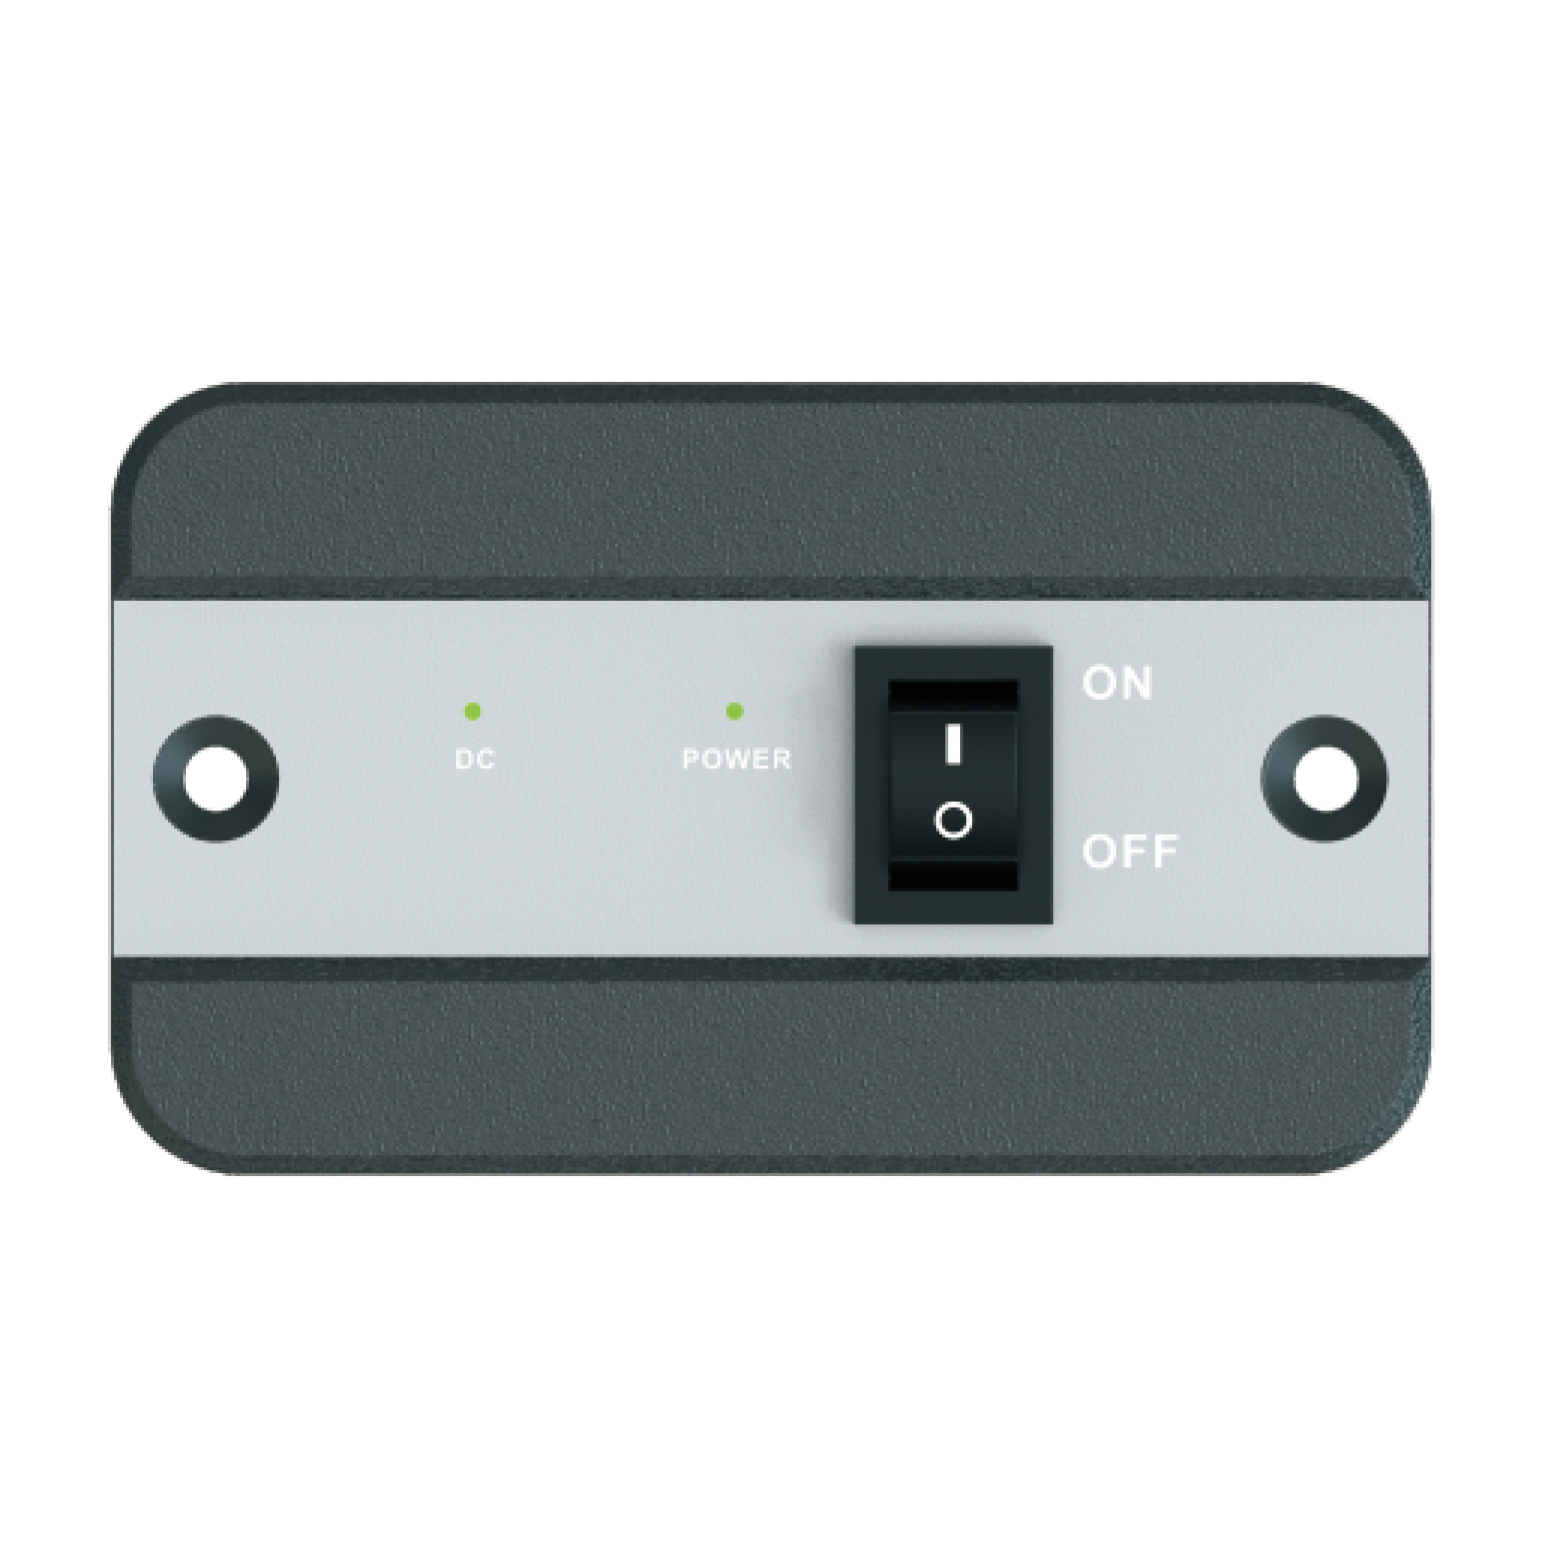 房车旅行-远控配件LED远控屏1